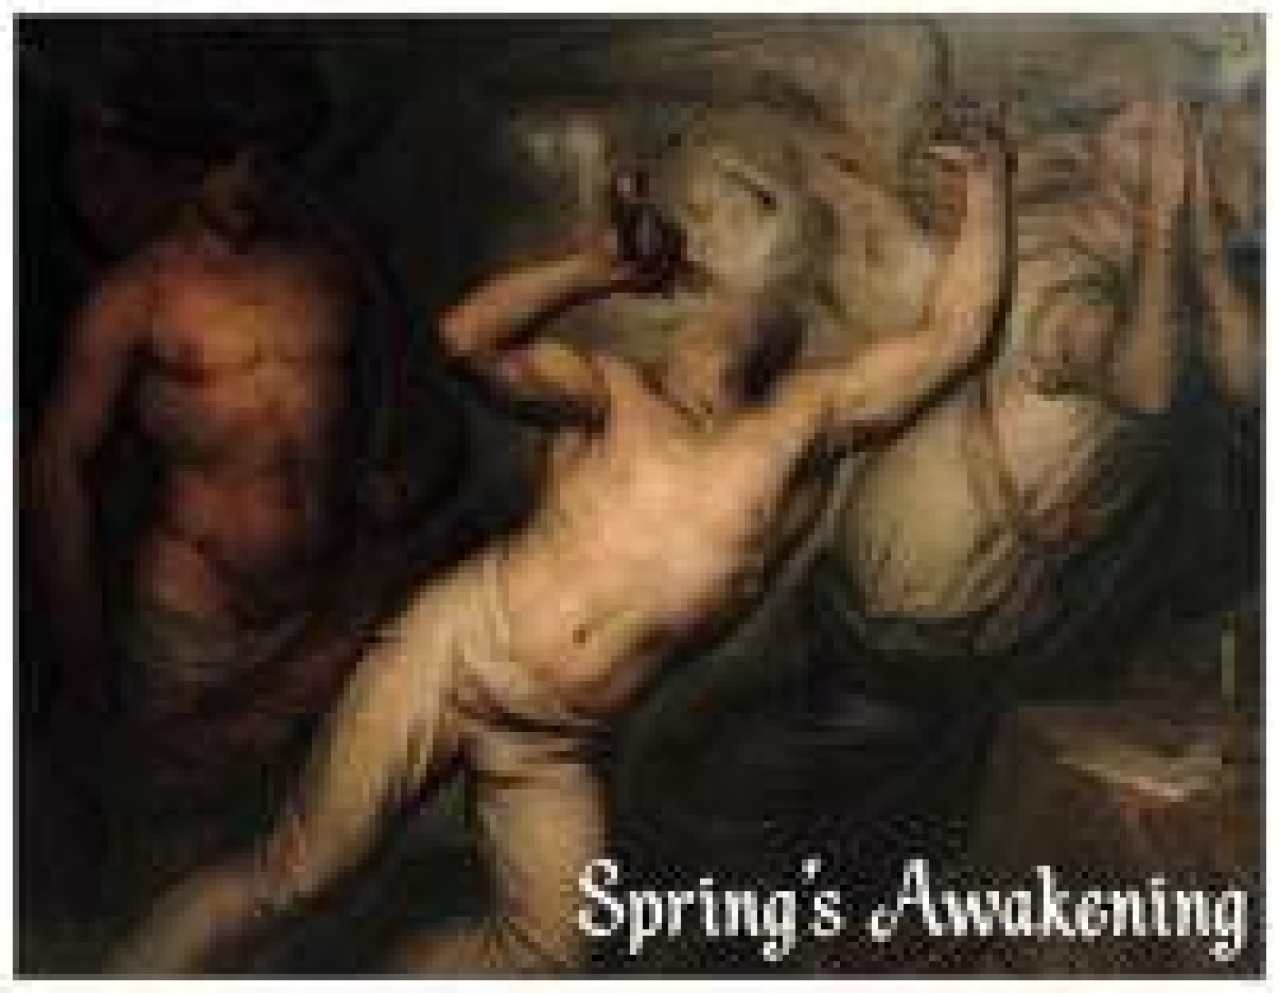 springs awakening logo 15988